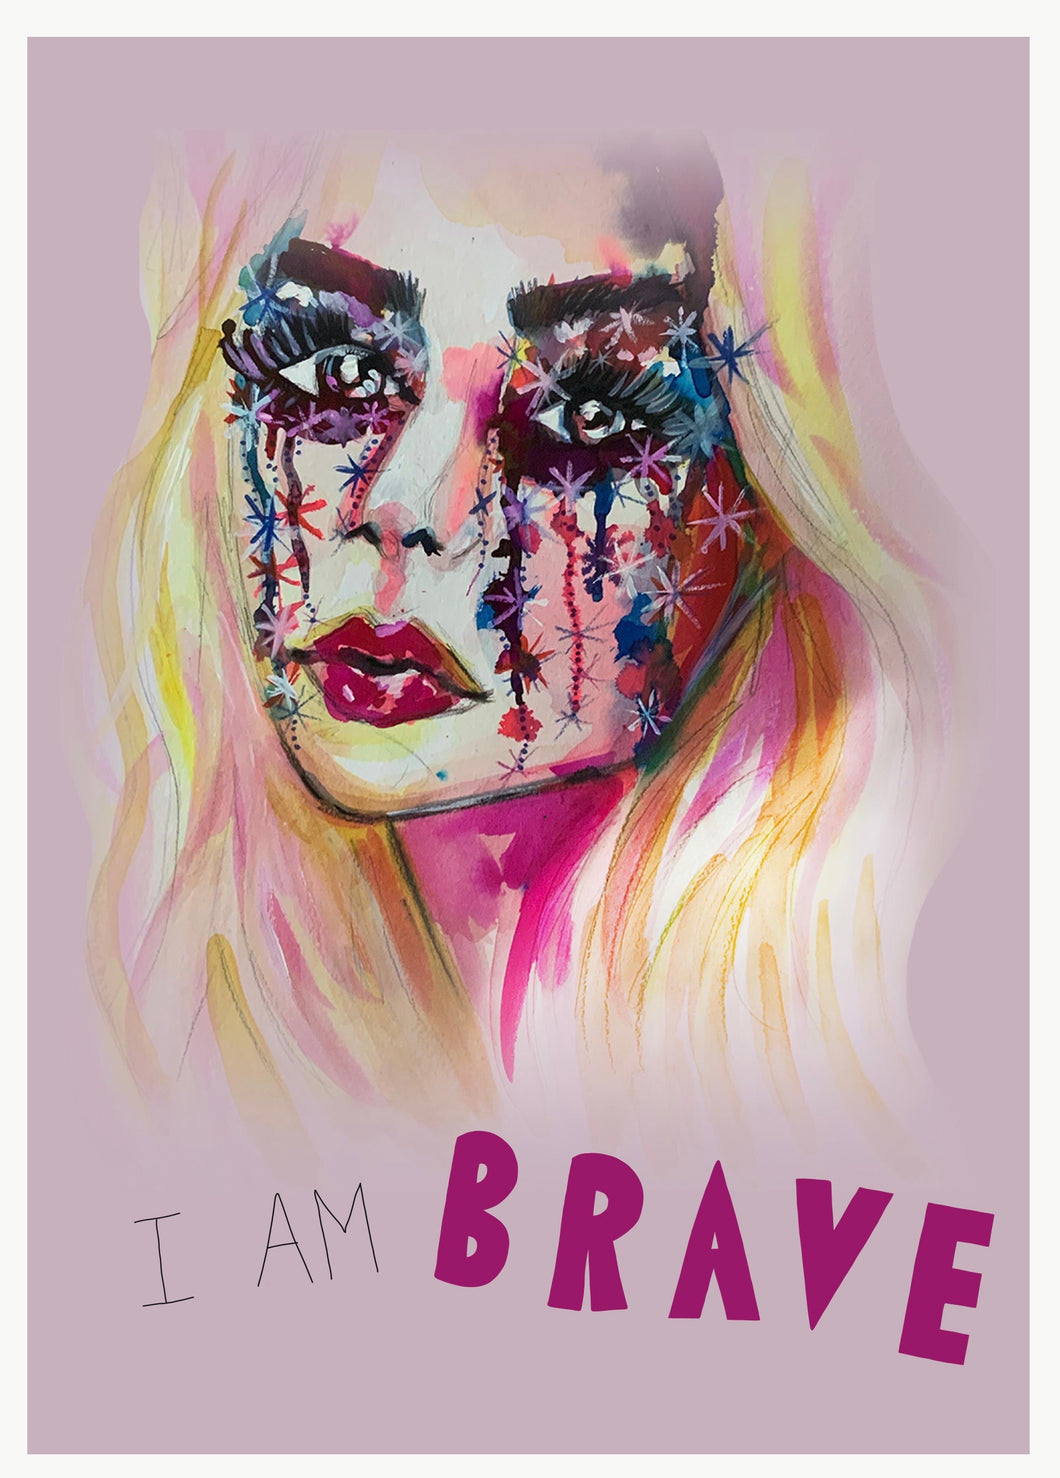 I Am Brave